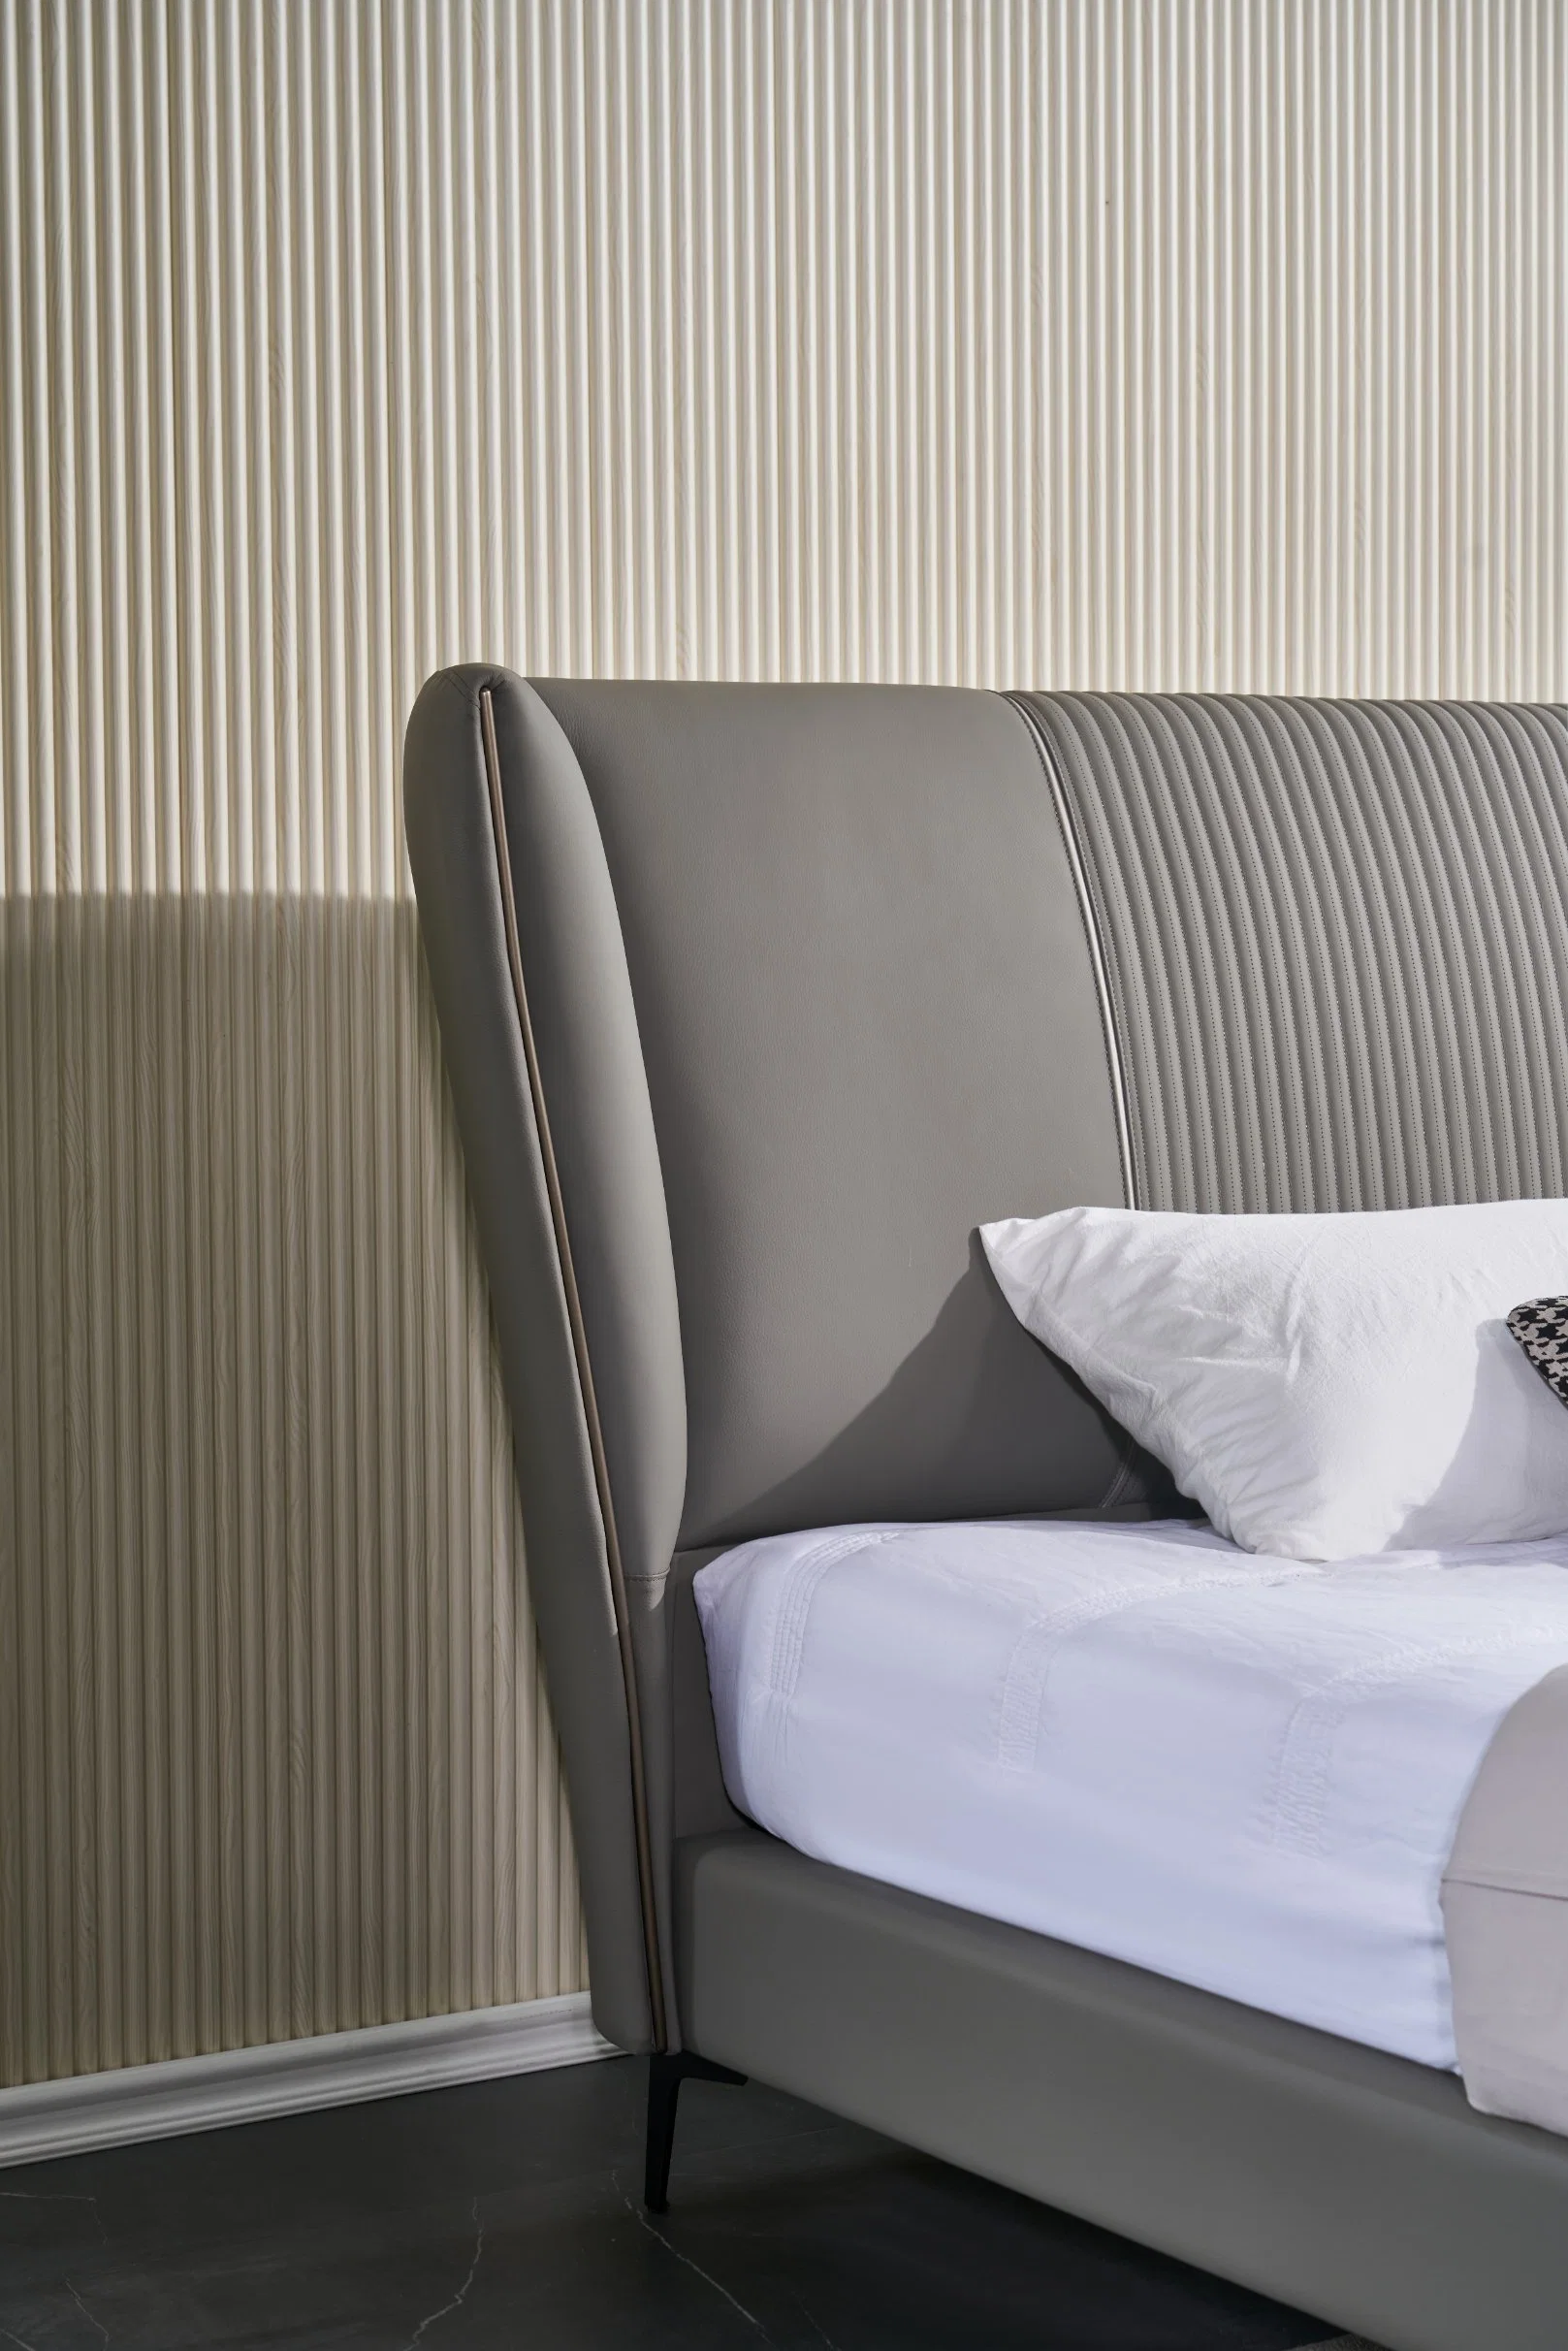 Vente en gros la plus récente chambre de luxe Hôtel mobilier taille personnalisée cuir véritable Ensemble de lits